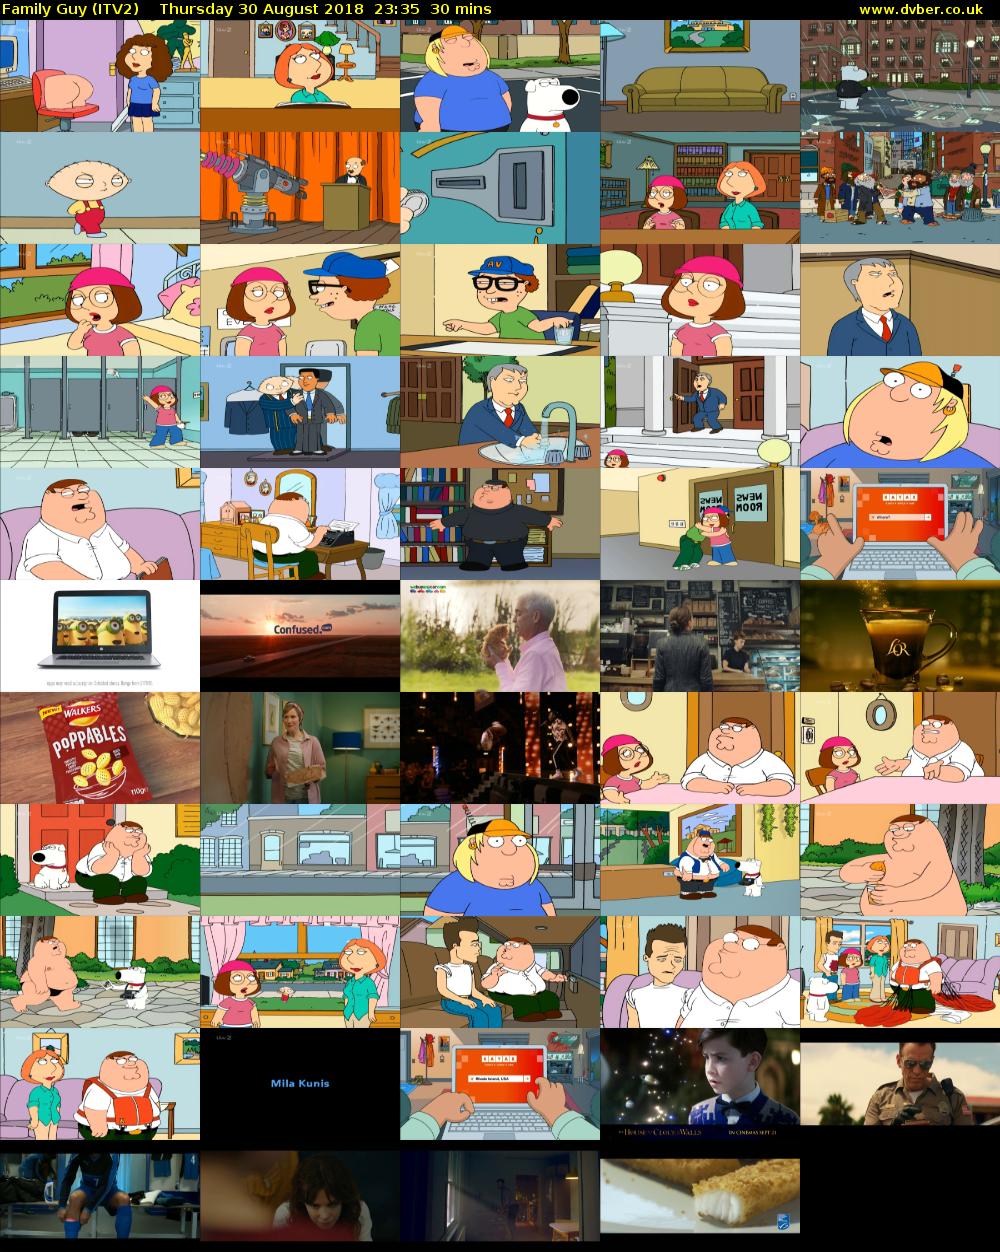 Family Guy (ITV2) Thursday 30 August 2018 23:35 - 00:05